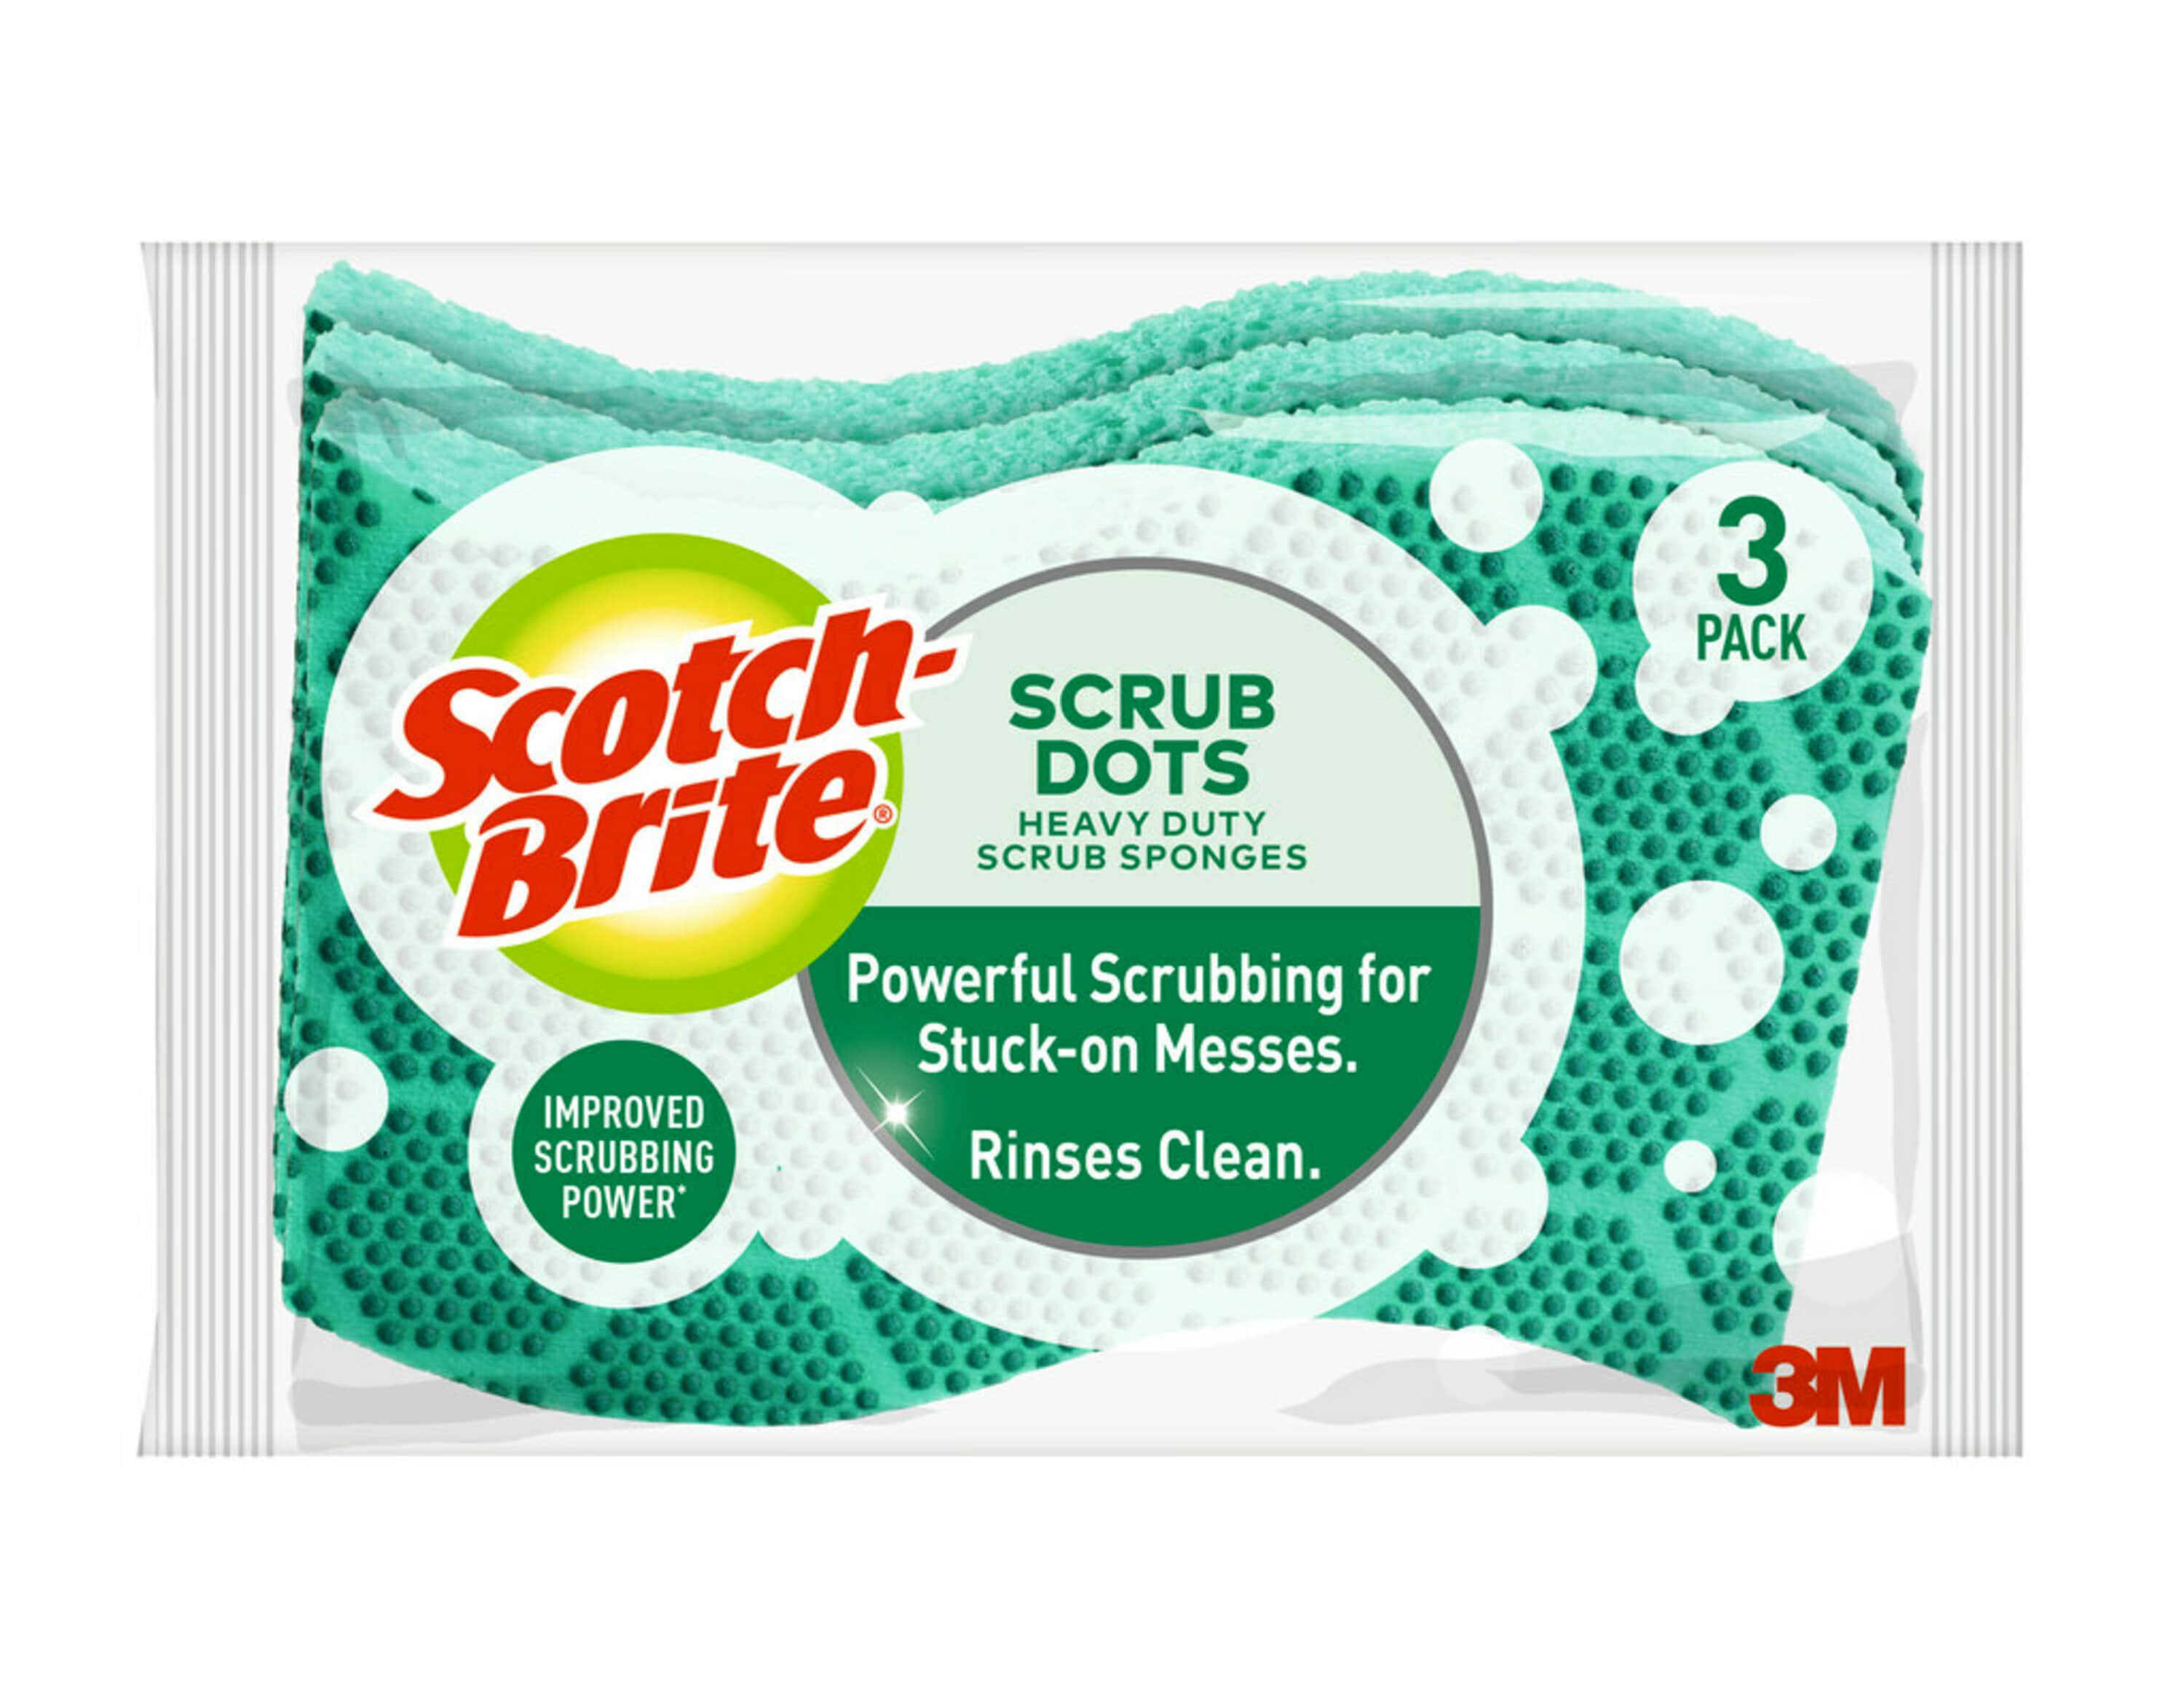 Scotch-Brite Heavy Duty Scrub Dots Sponges - Shop Sponges